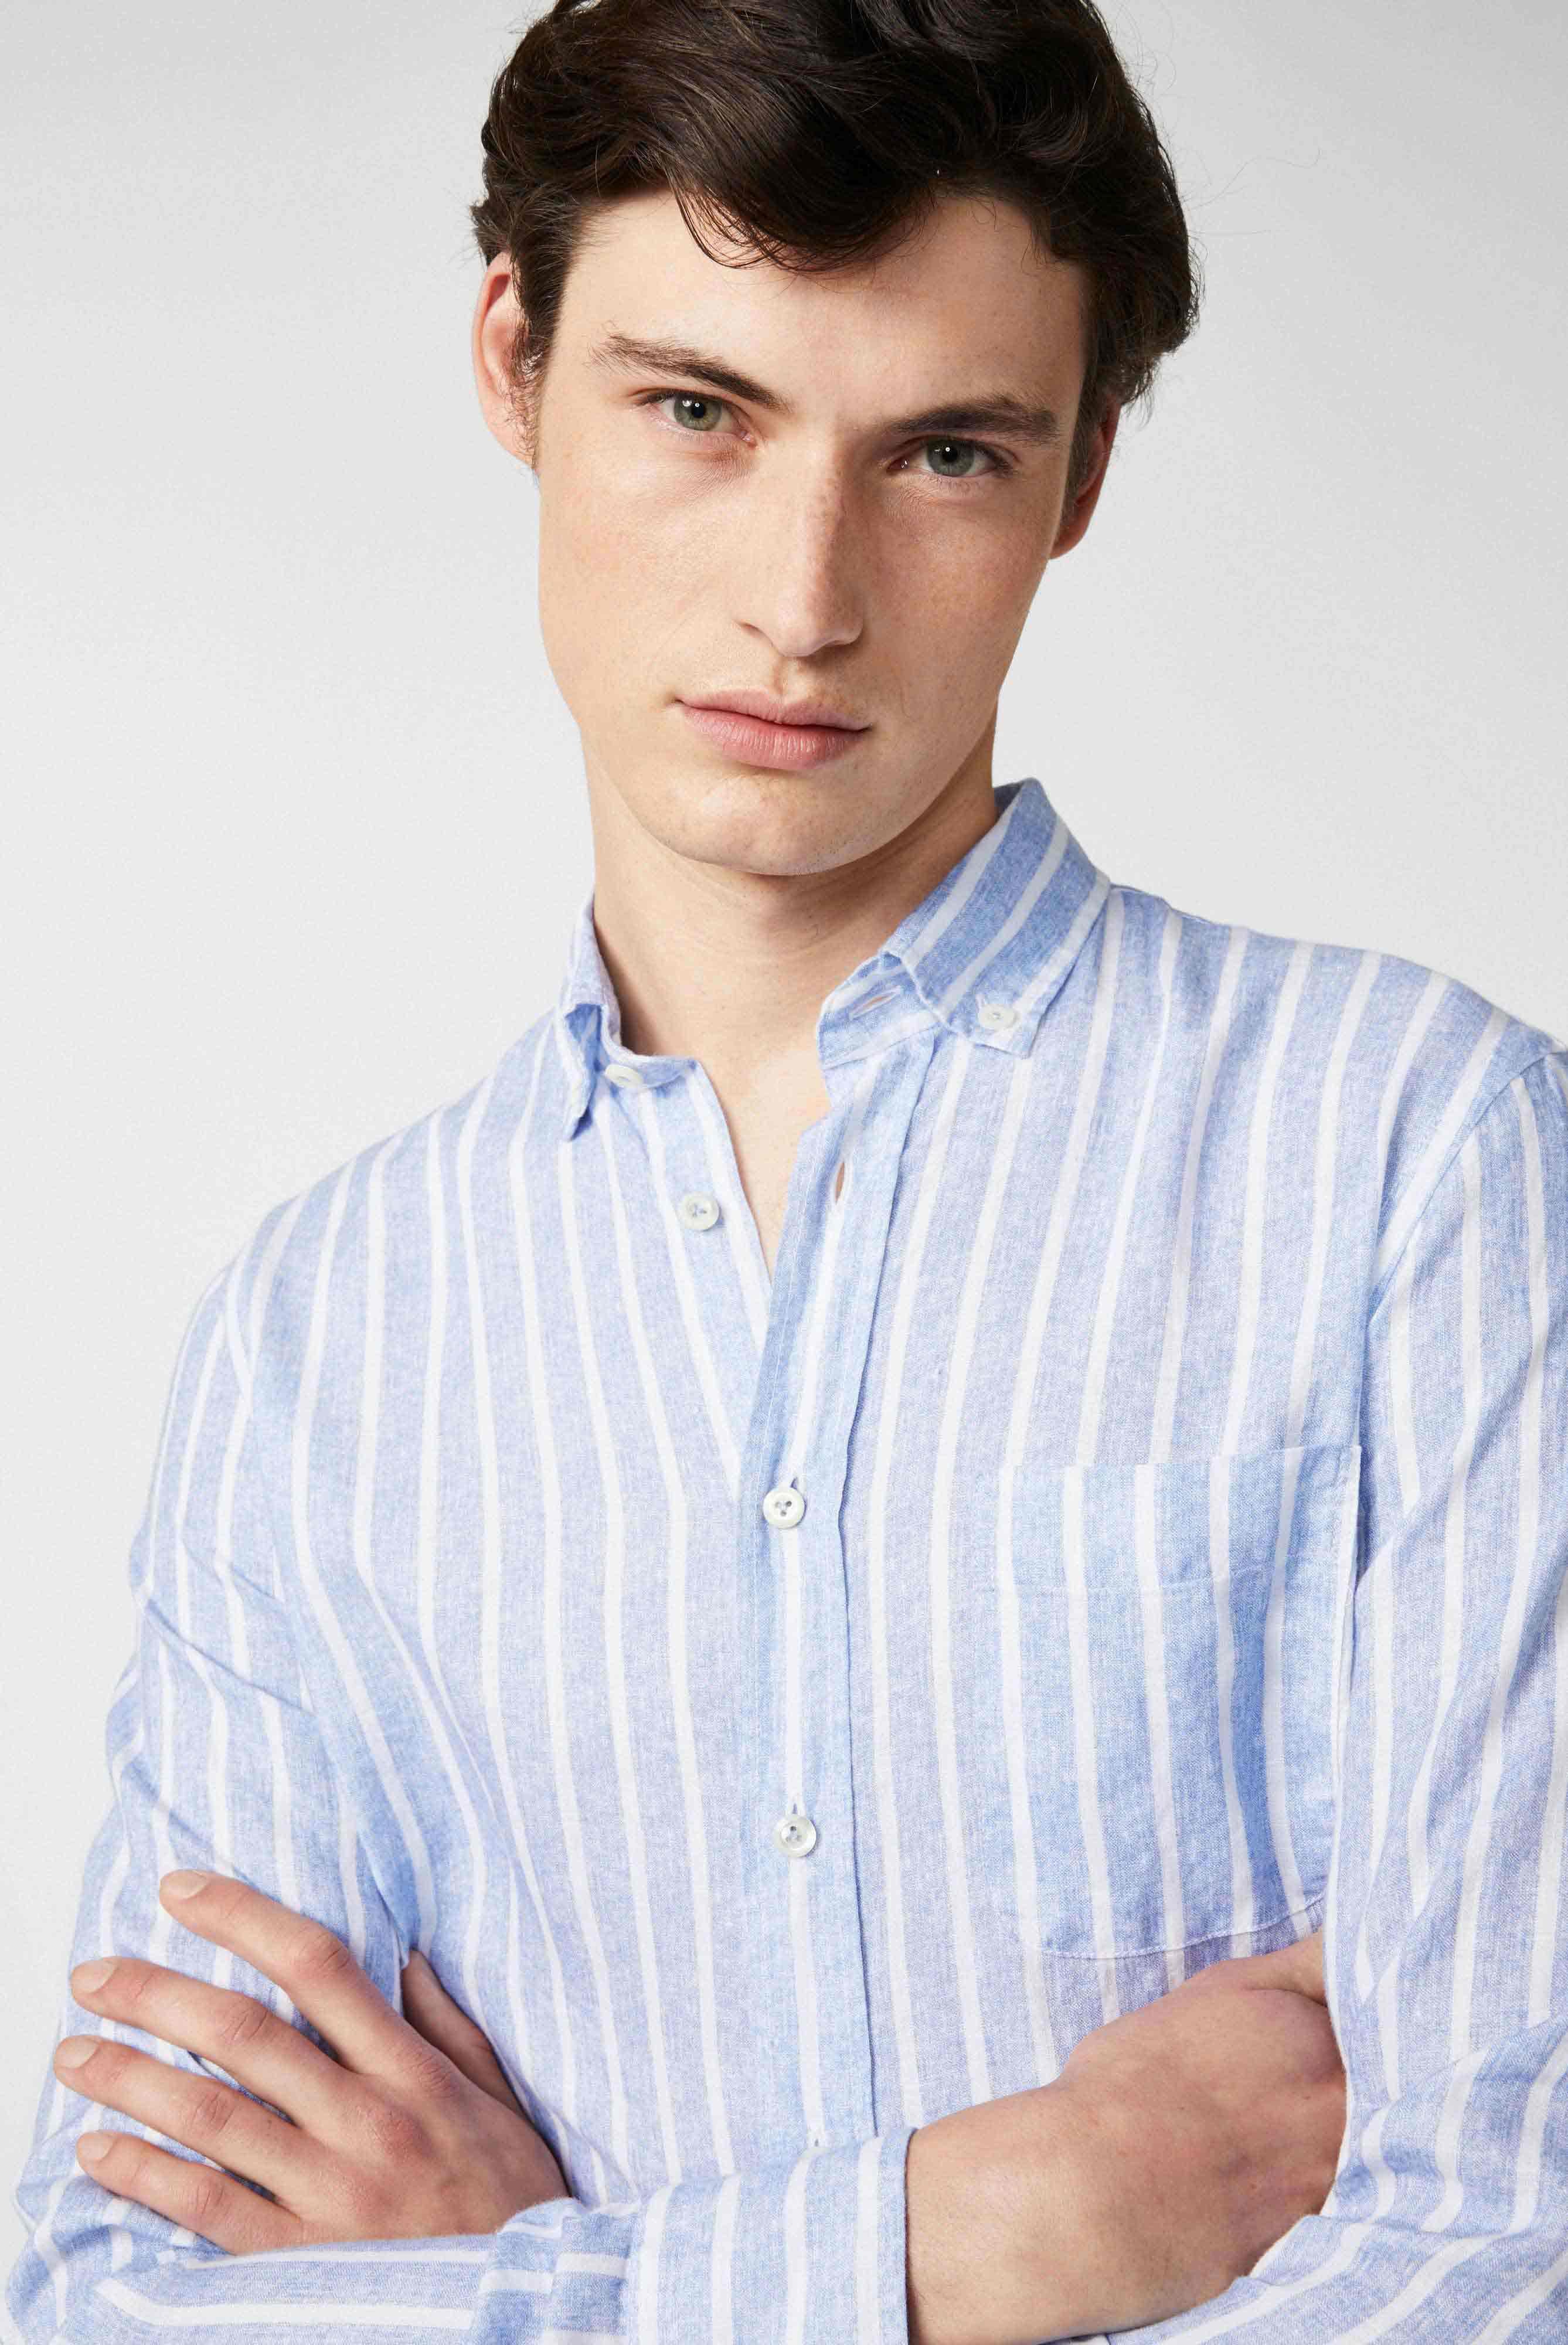 Casual Hemden+Button-Down-Hemd aus Leinen mit Streifendruck+20.2013.MB.170238.760.38